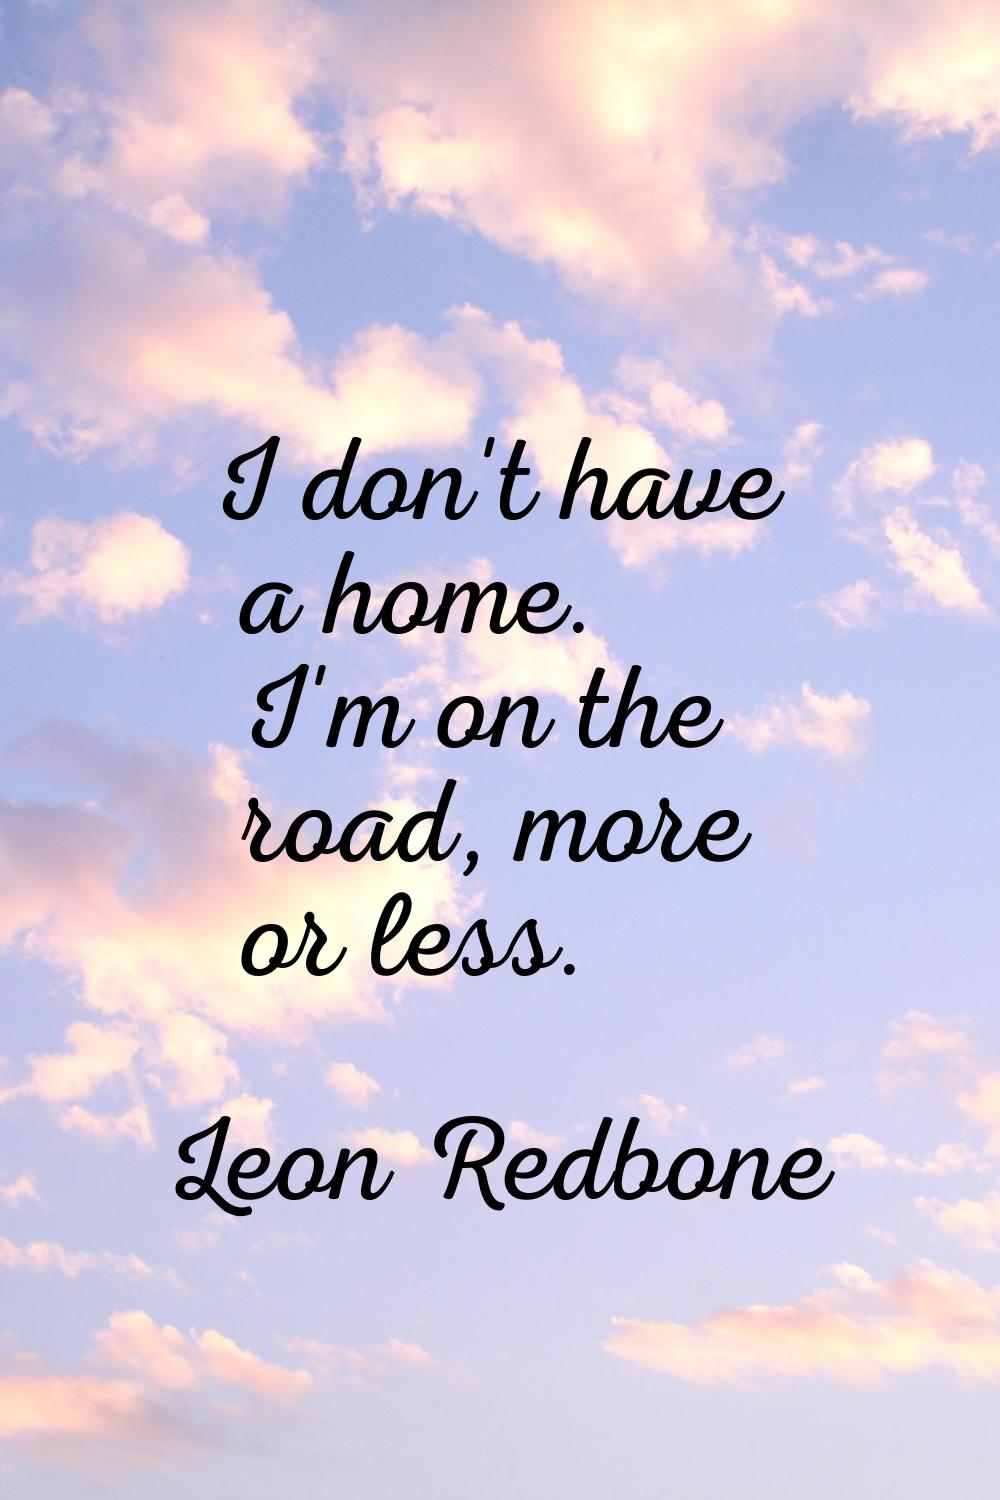 I don't have a home. I'm on the road, more or less.